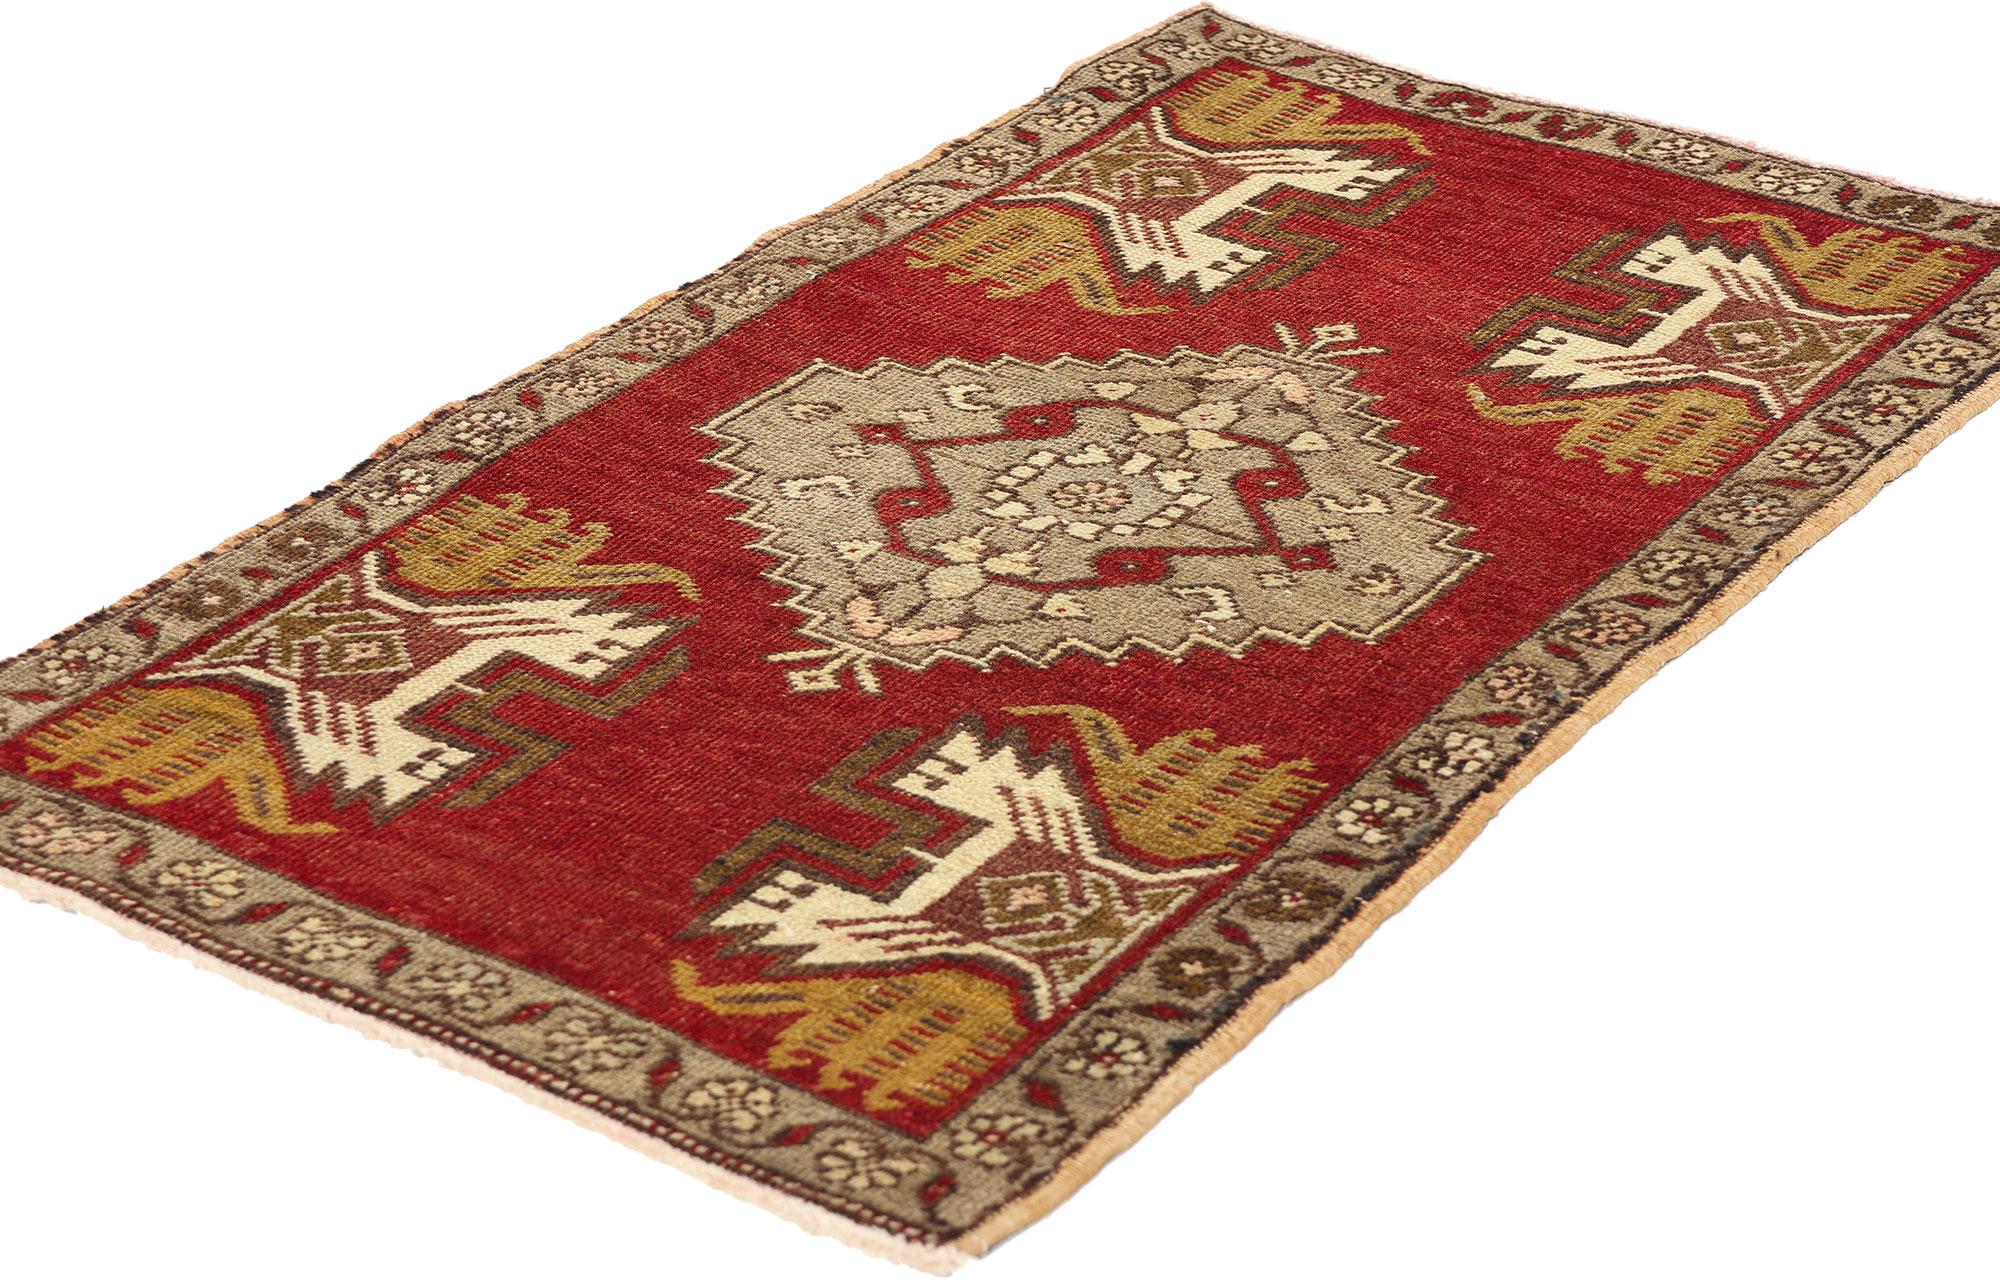 50553 Tapis vintage turc Yastik, 01'08 x 02'10. Les tapis turcs vintage Yastik sont la crème de la crème des petits tapis anatoliens. Utilisées à l'origine comme housses de coussin, ces beautés ont une histoire aussi riche que leurs motifs